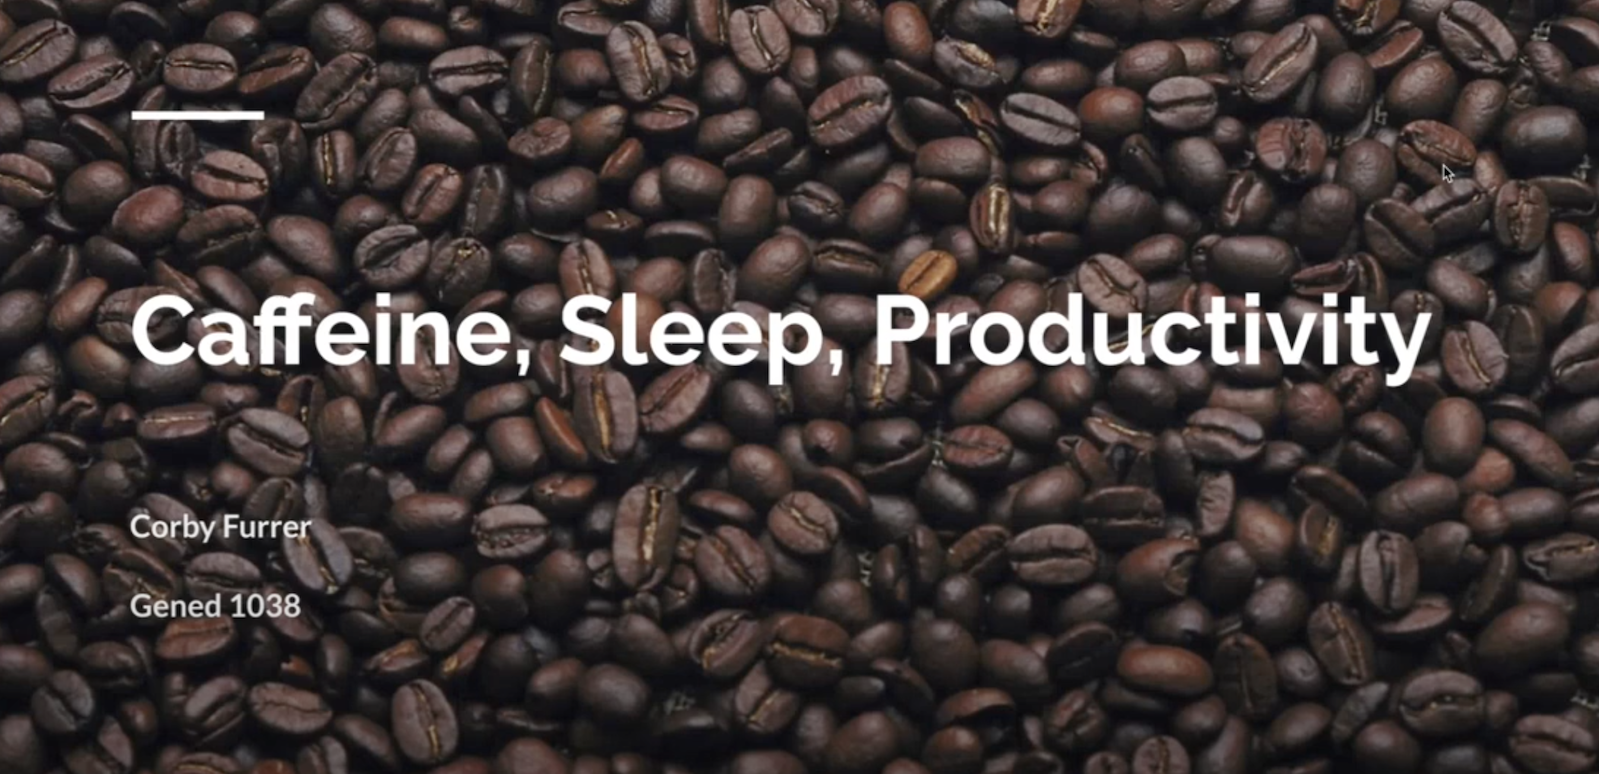 Caffeine, Sleep, and Productivity